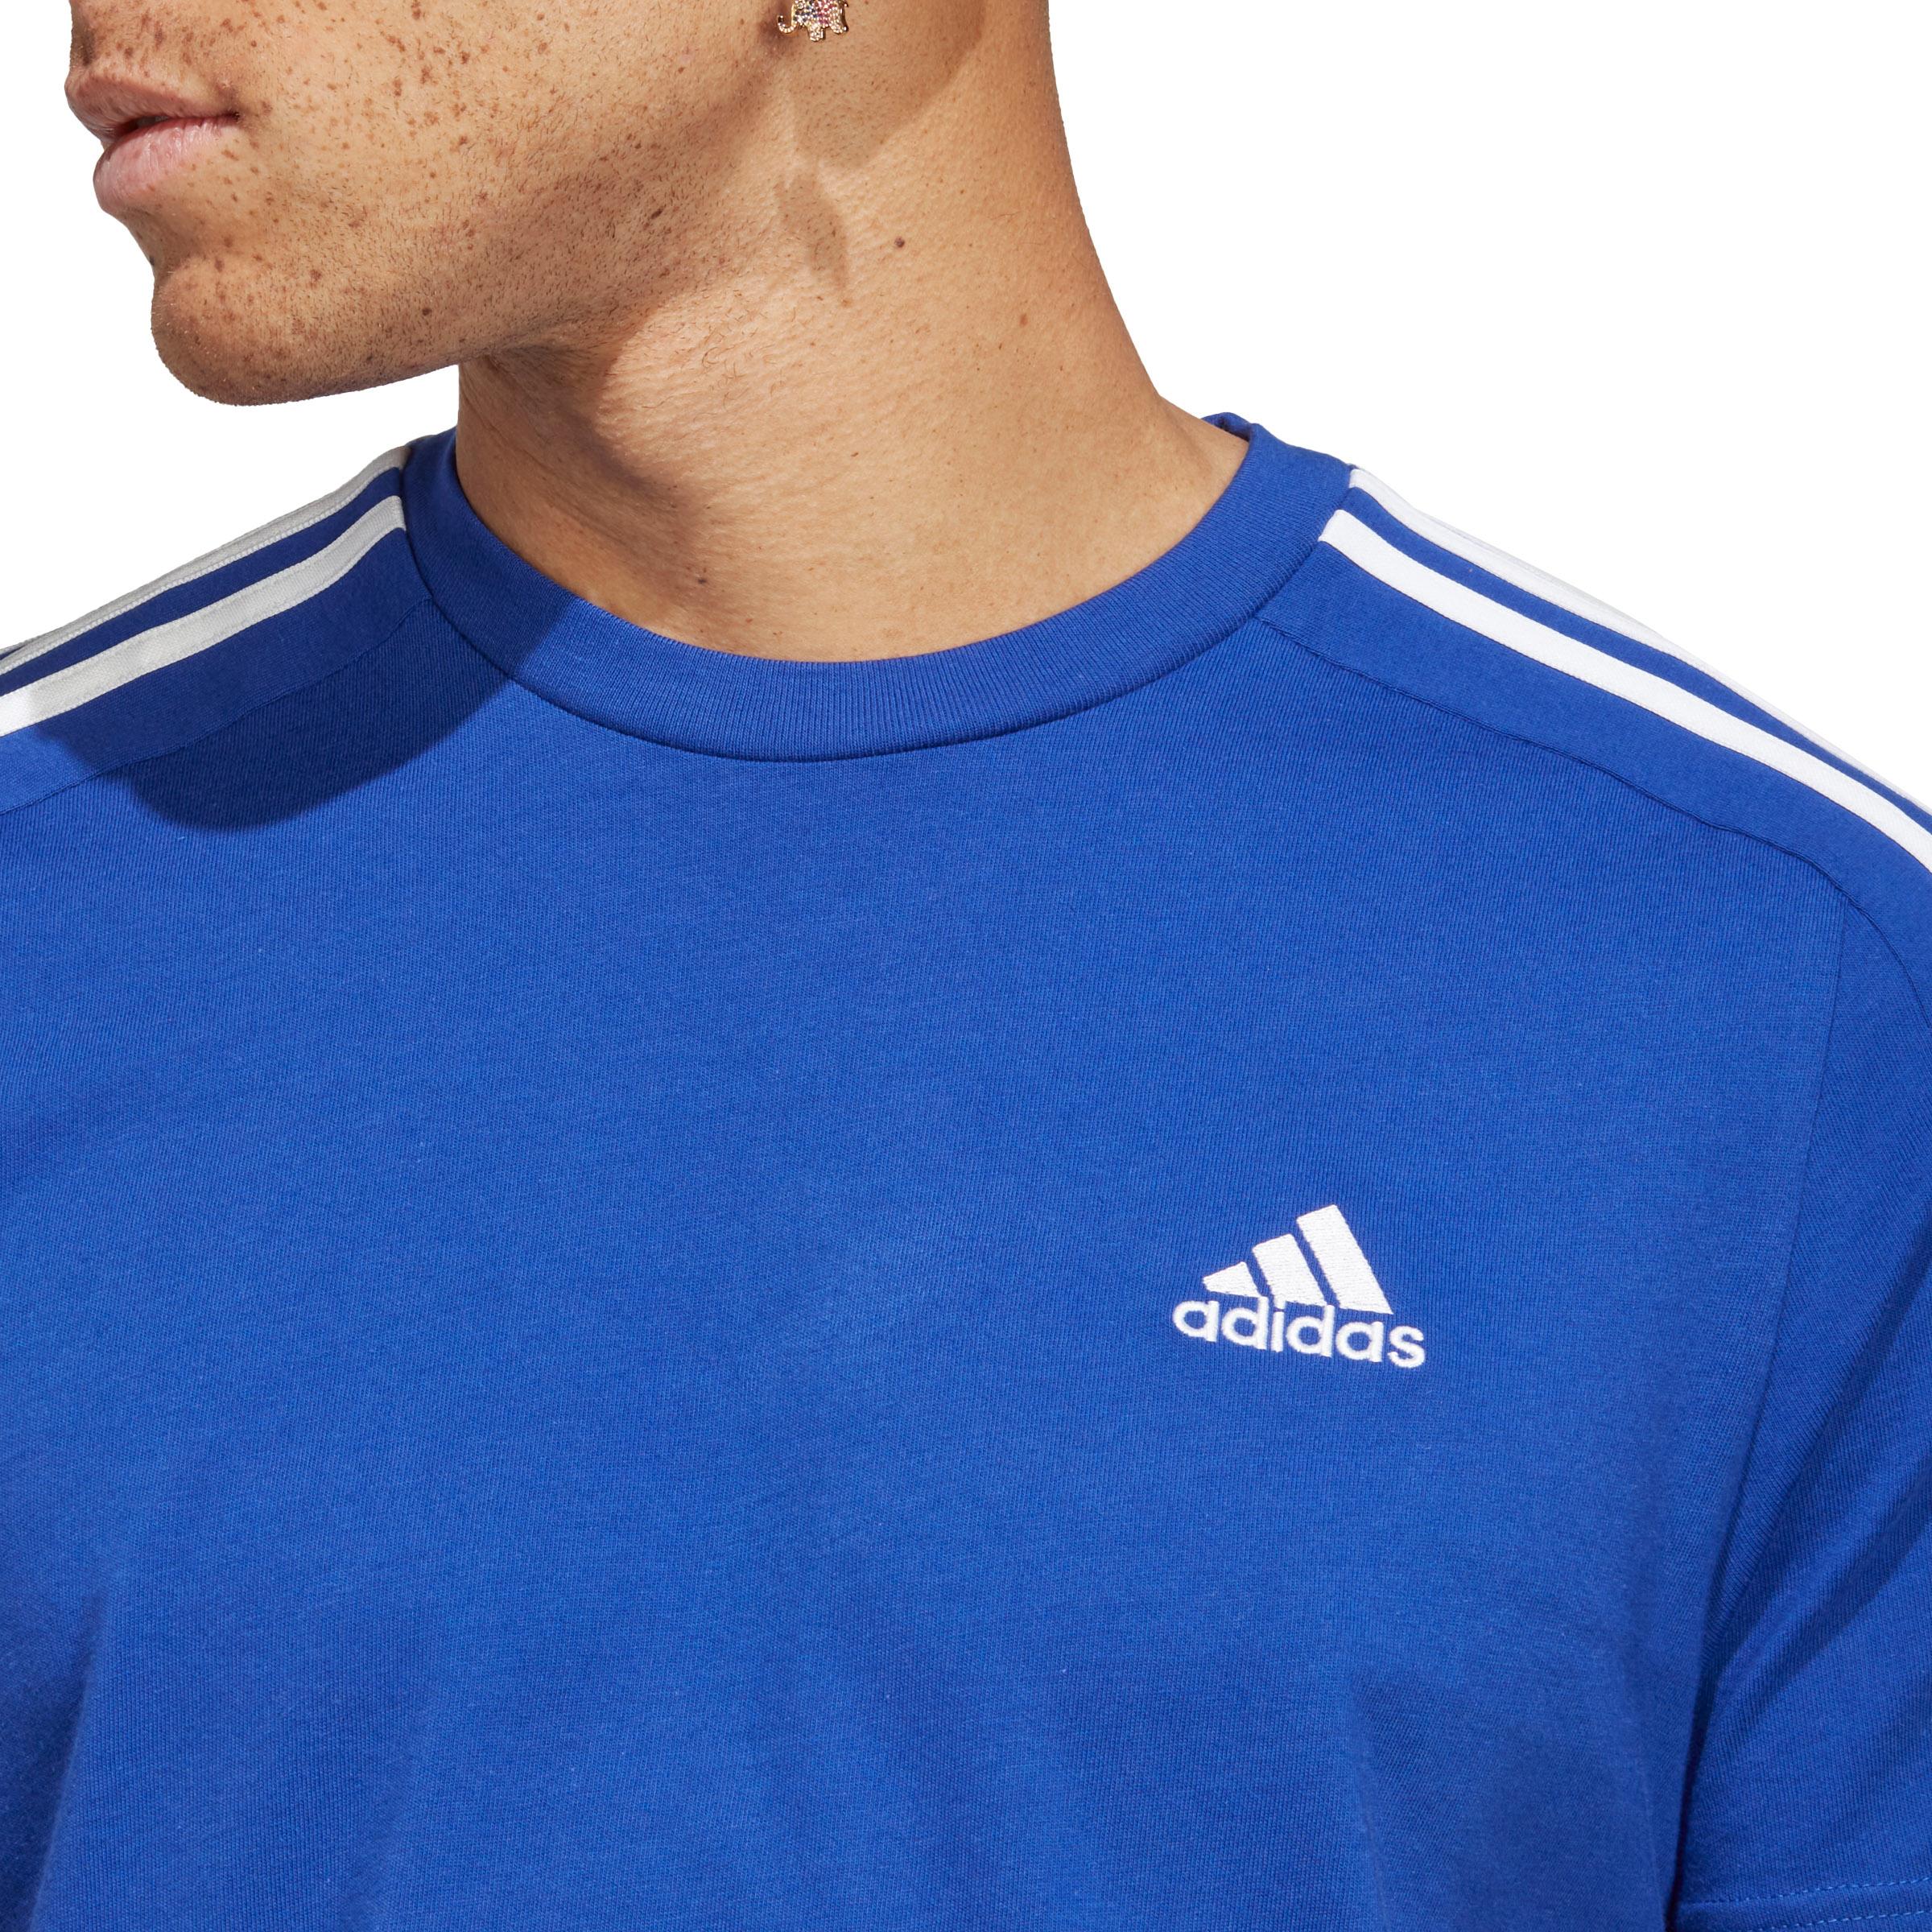 Adidas T-Shirt Herren blue- JERSEY ESSENTIALS Shop Online white semi im 3-STREIFEN SINGLE kaufen lucid SportScheck von